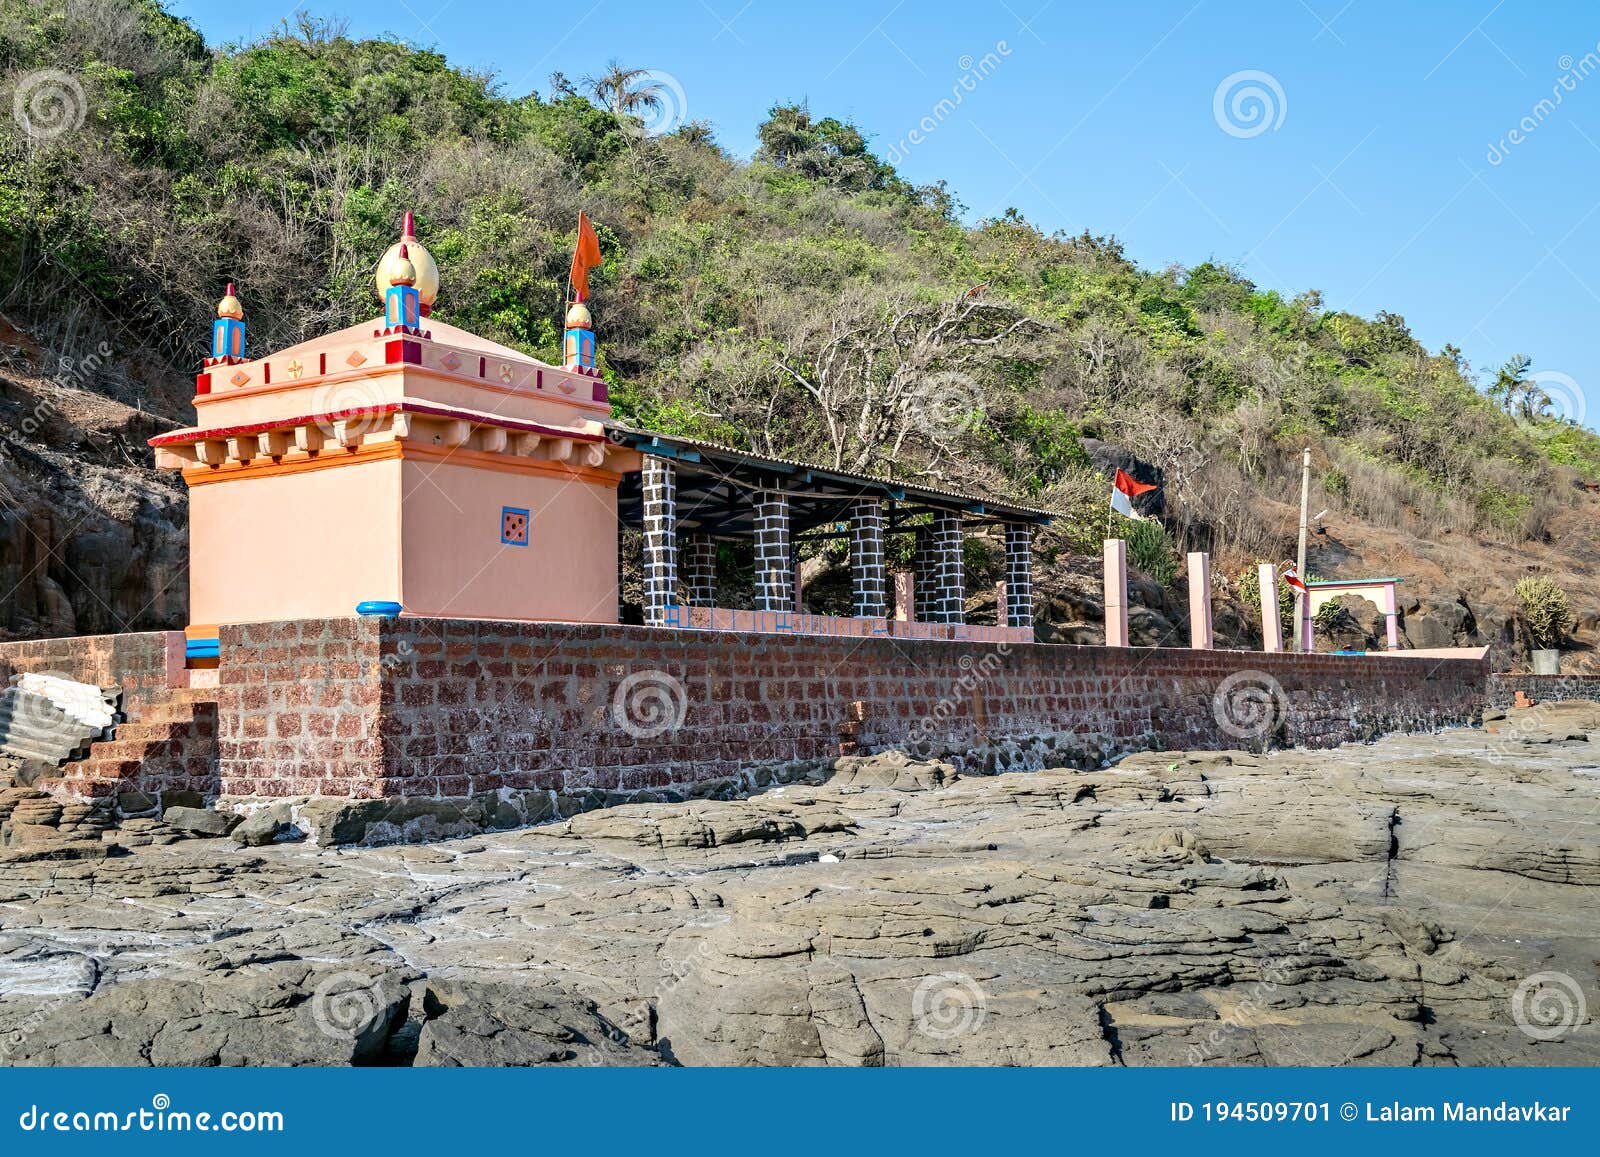 colorful temple of goddess uma maheshwari on rocky shore